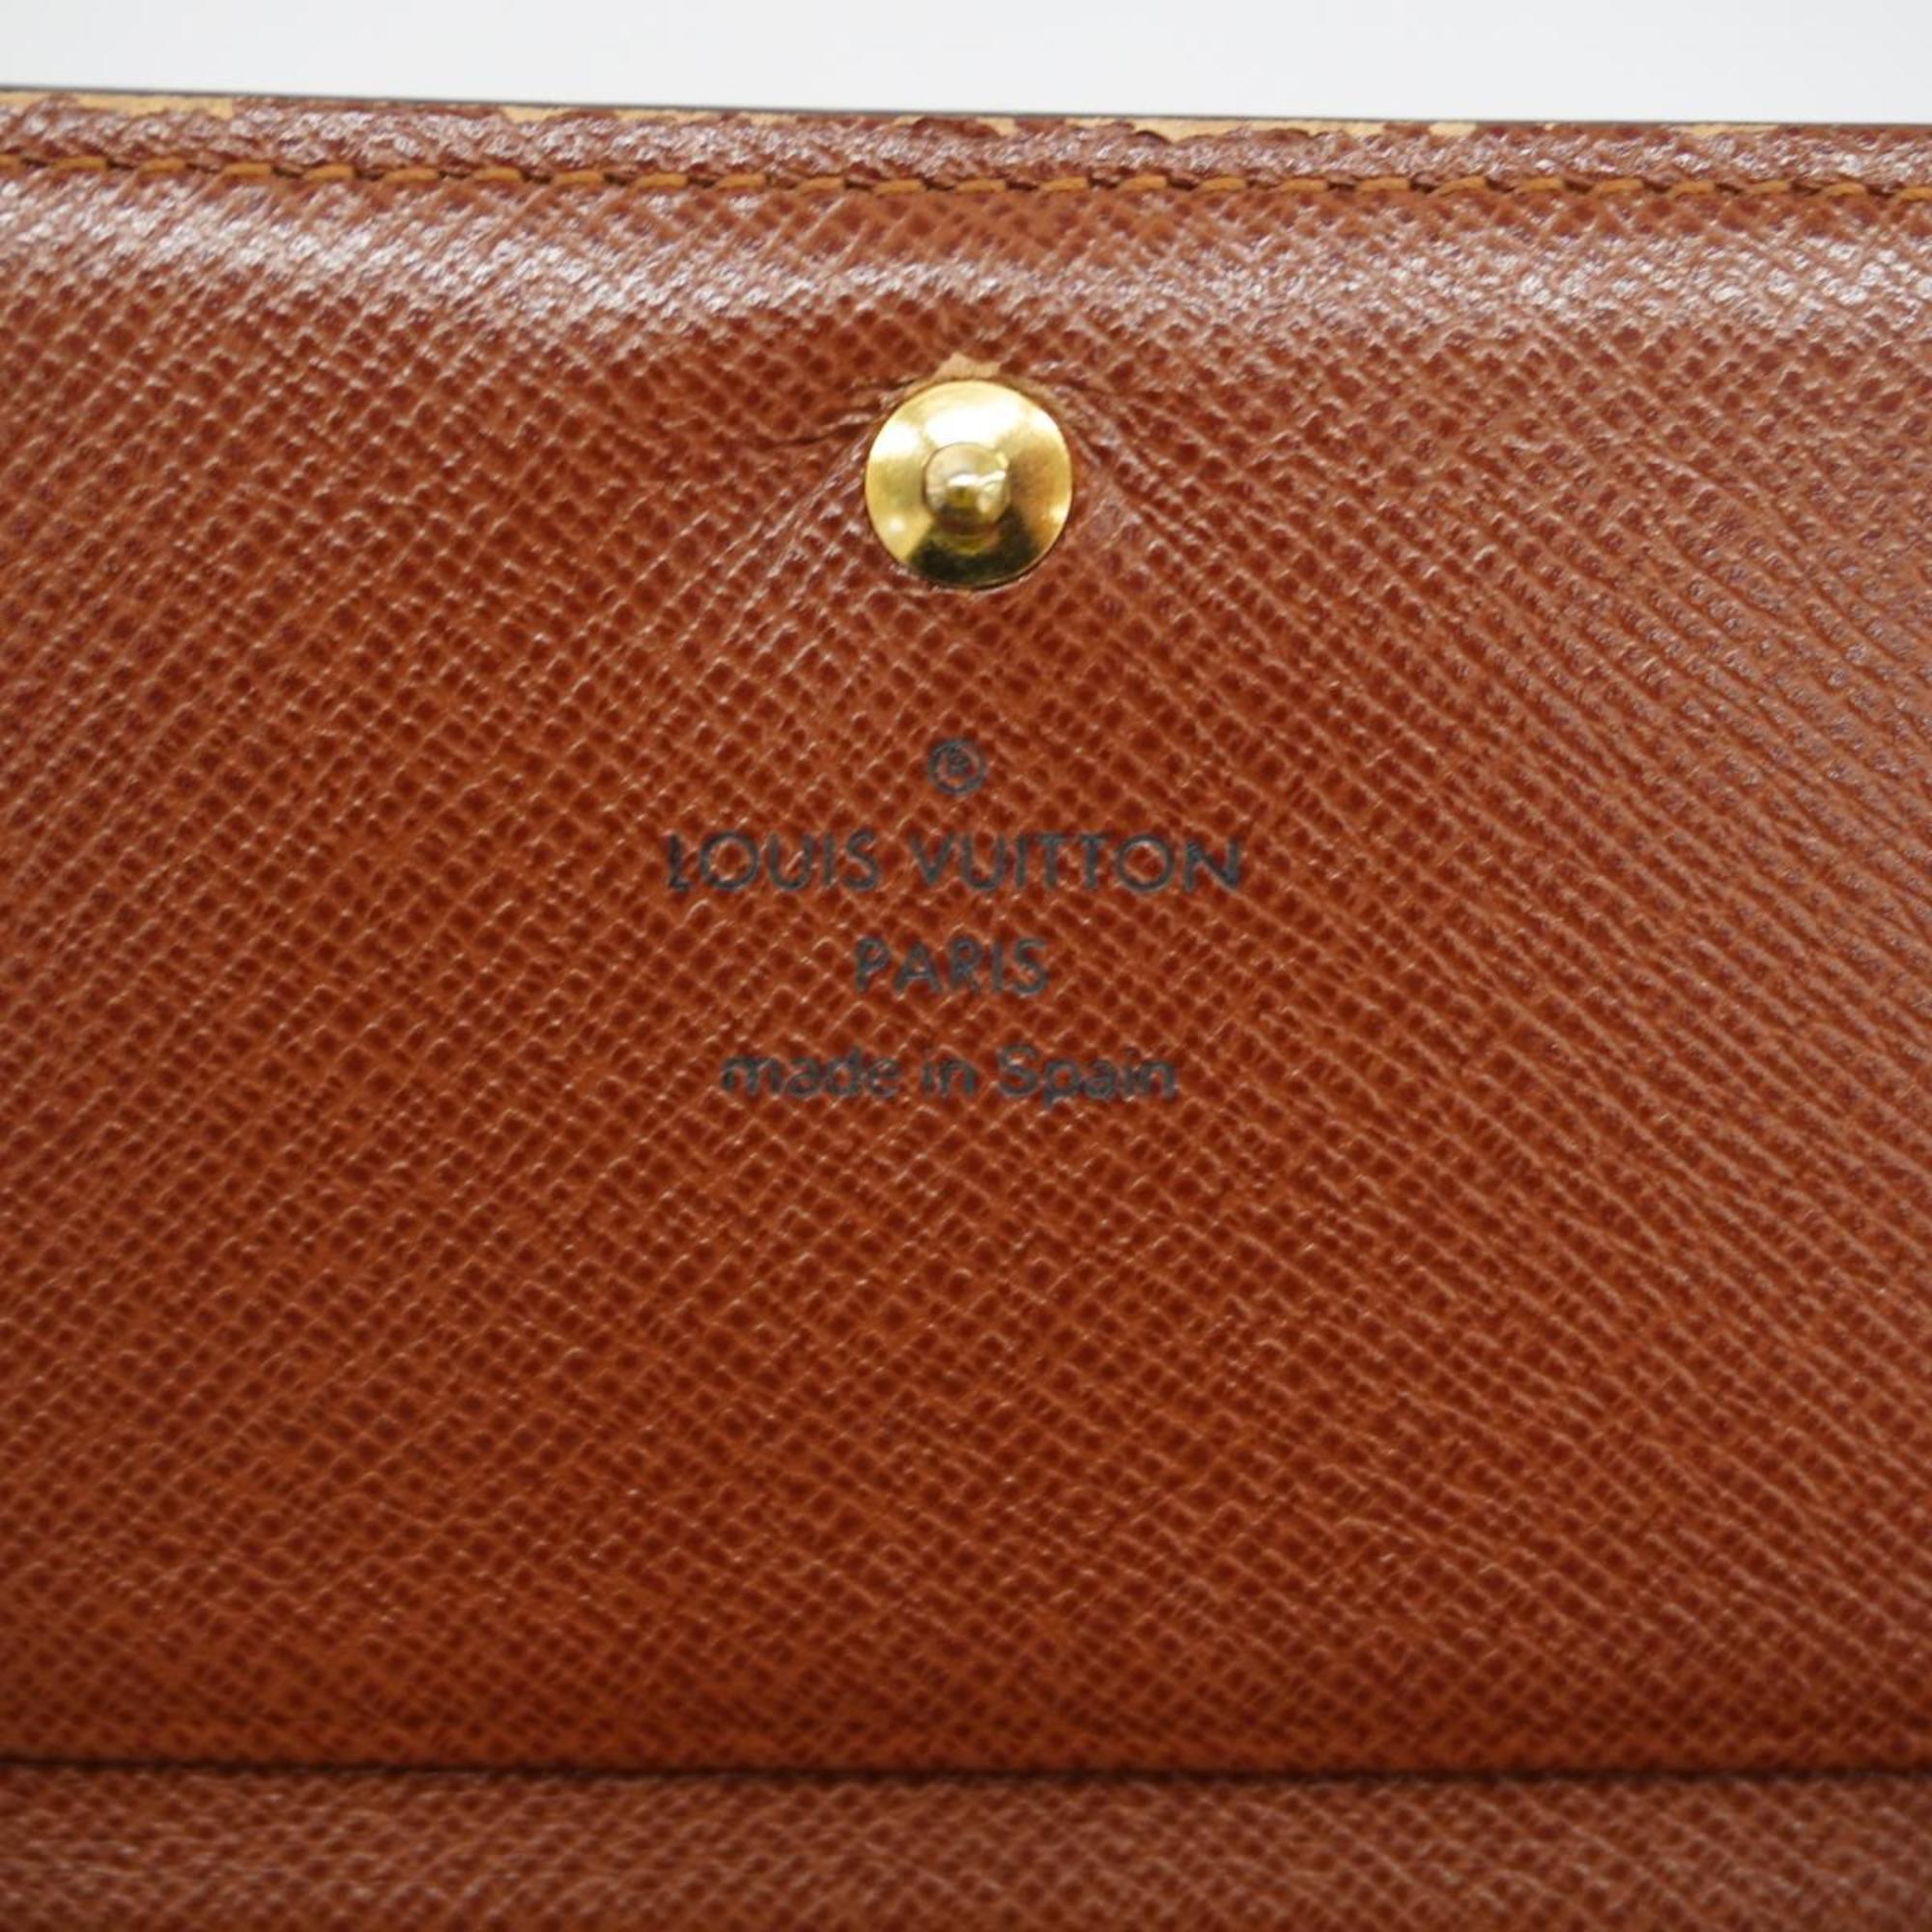 Louis Vuitton Wallet Monogram Porte Monnaie Bietre Sor M61730 Brown Men's Women's